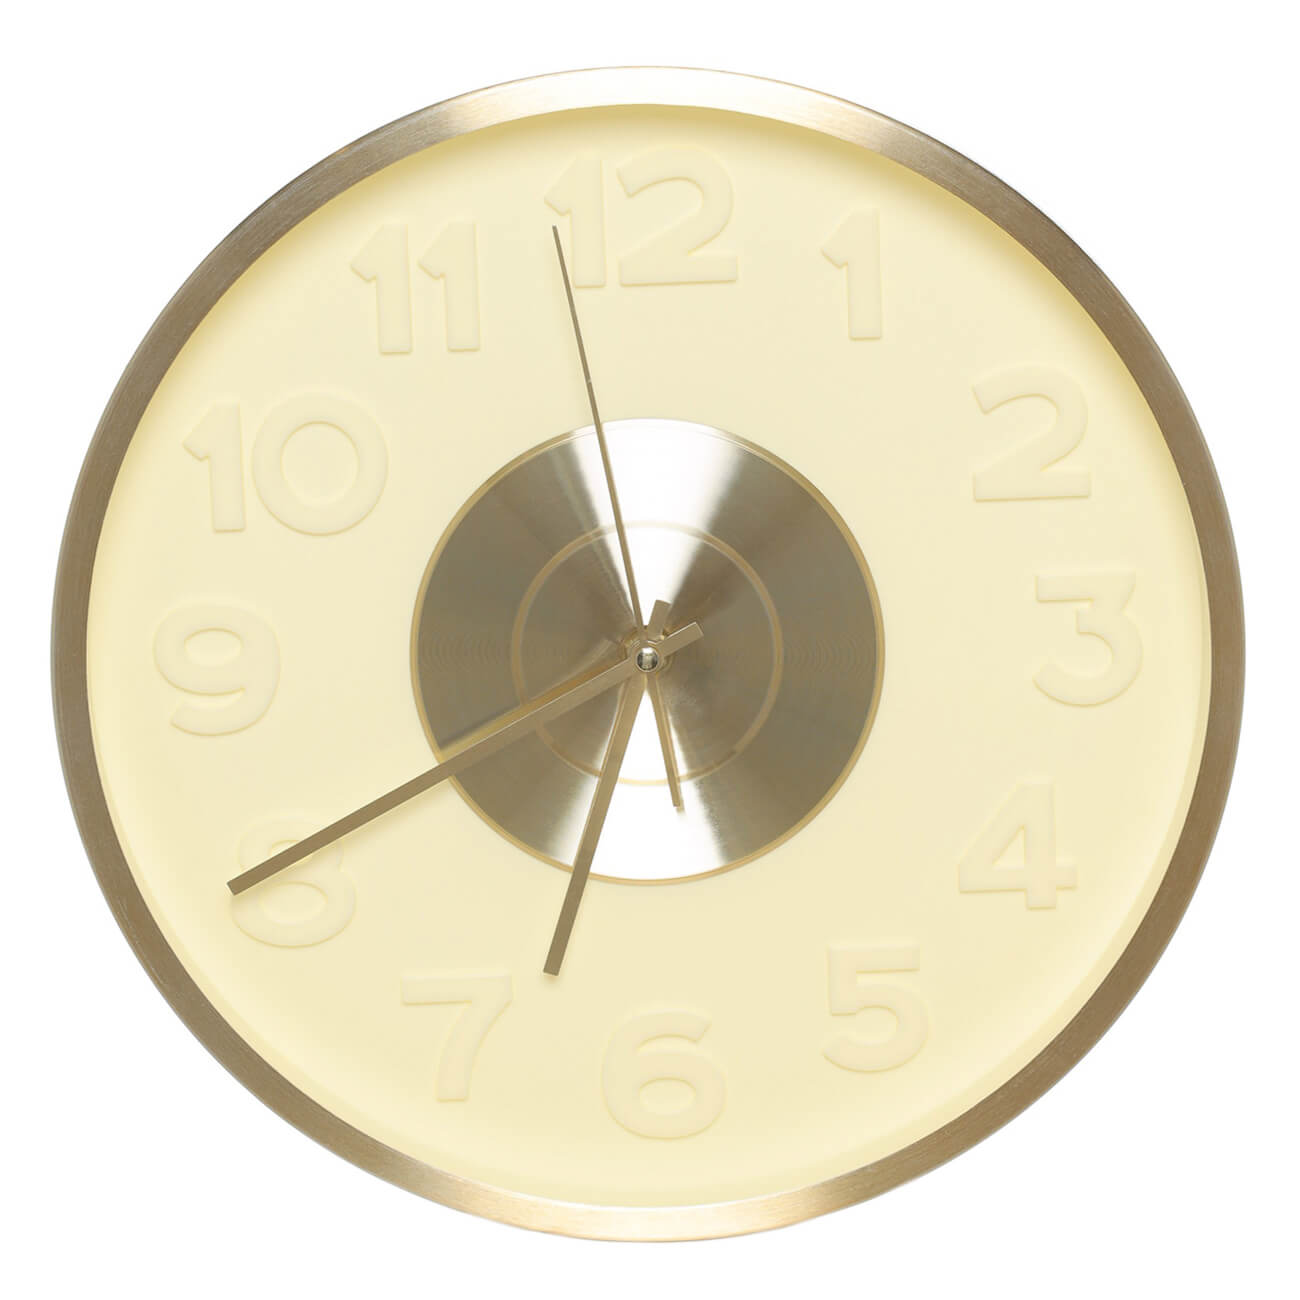 Часы настенные, 30 см, с подсветкой, пластик/стекло, круглые, золотистые, Fantastic gold часы настенные xy166822